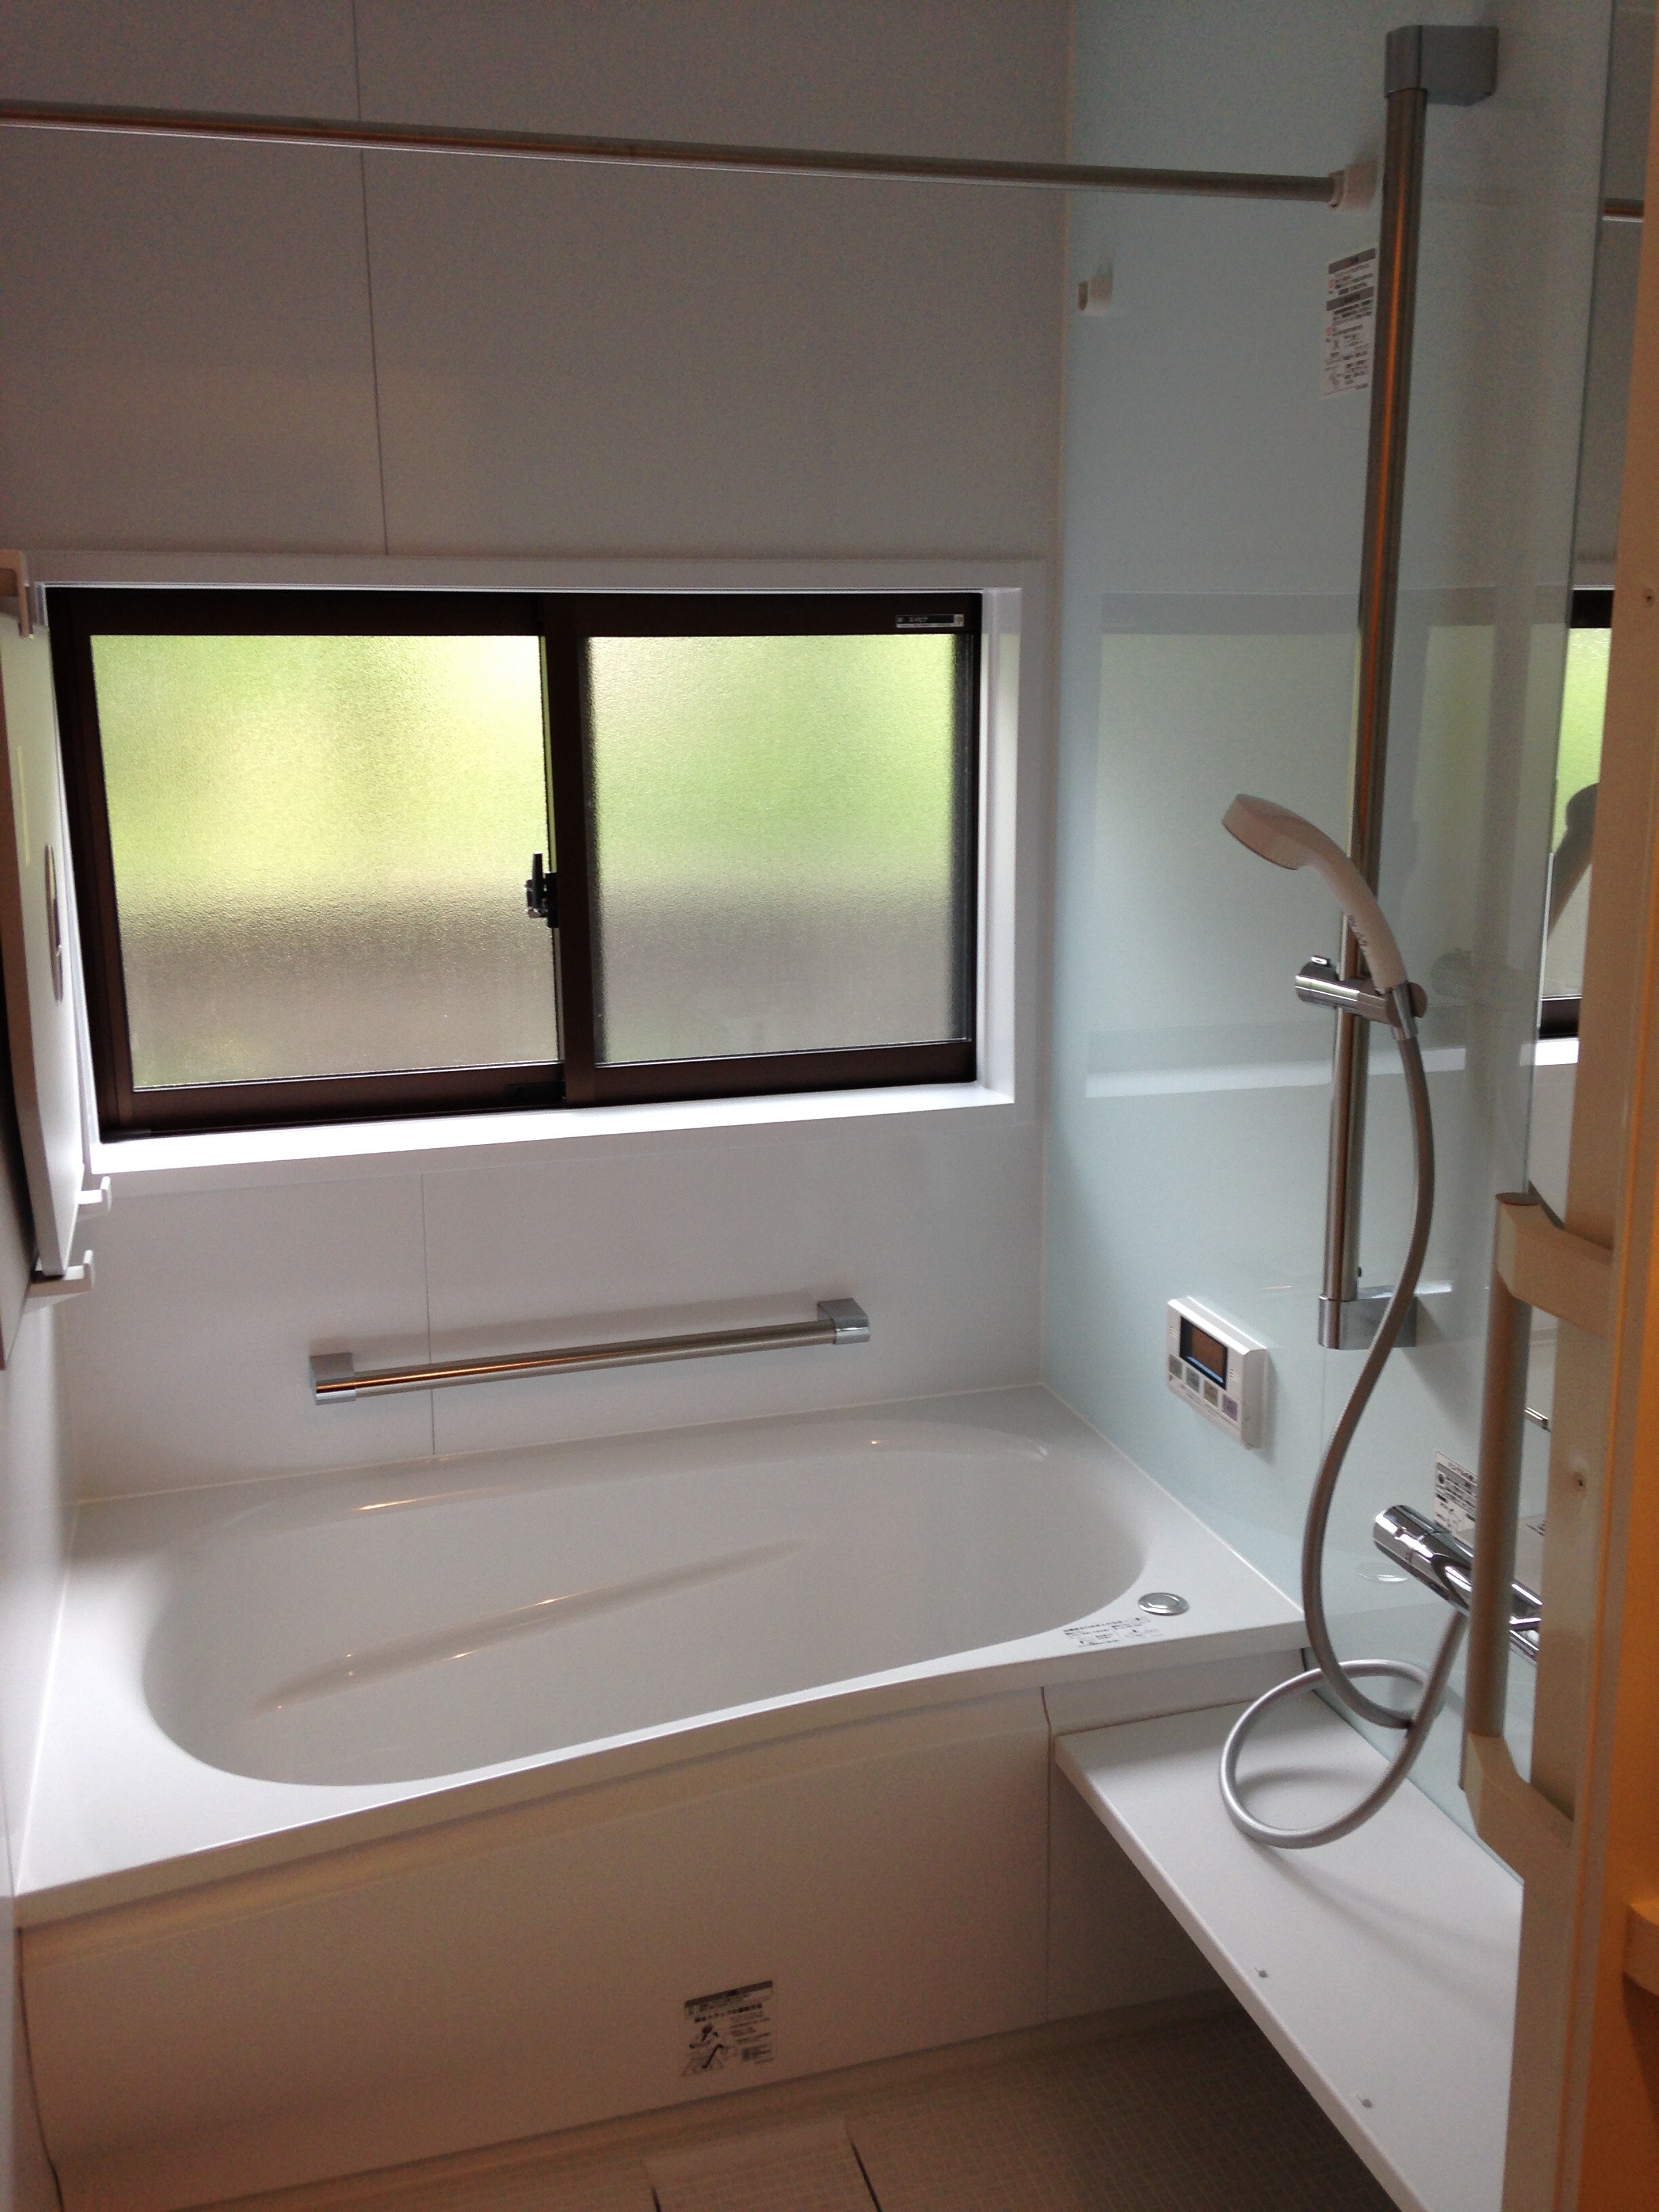 窓の高さを変えた浴室リモデル 有 ユニテム 本社 リフォーム実例 費用 Toto